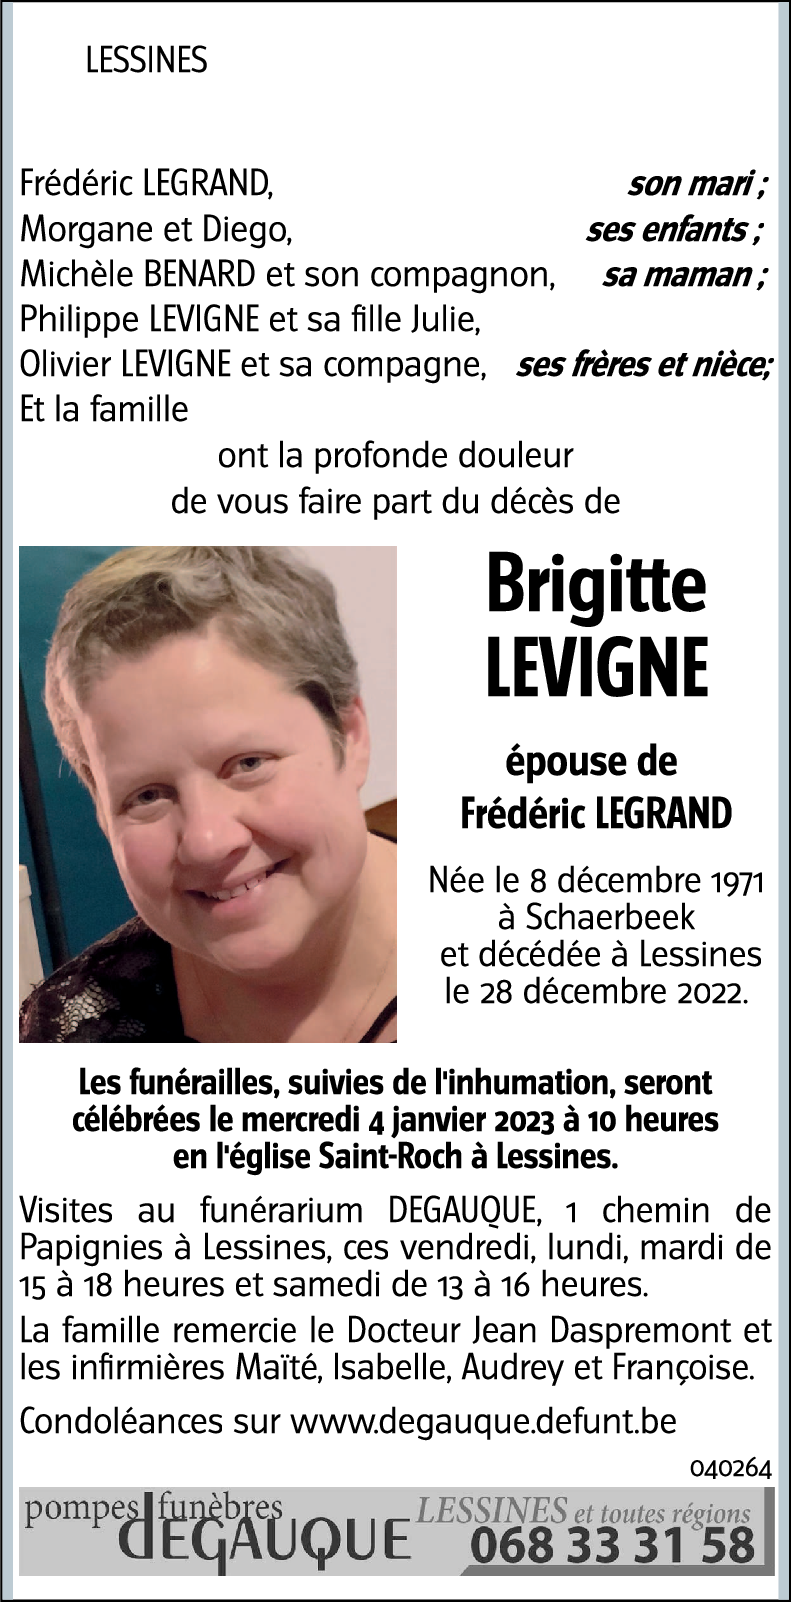 Brigitte LEVIGNE